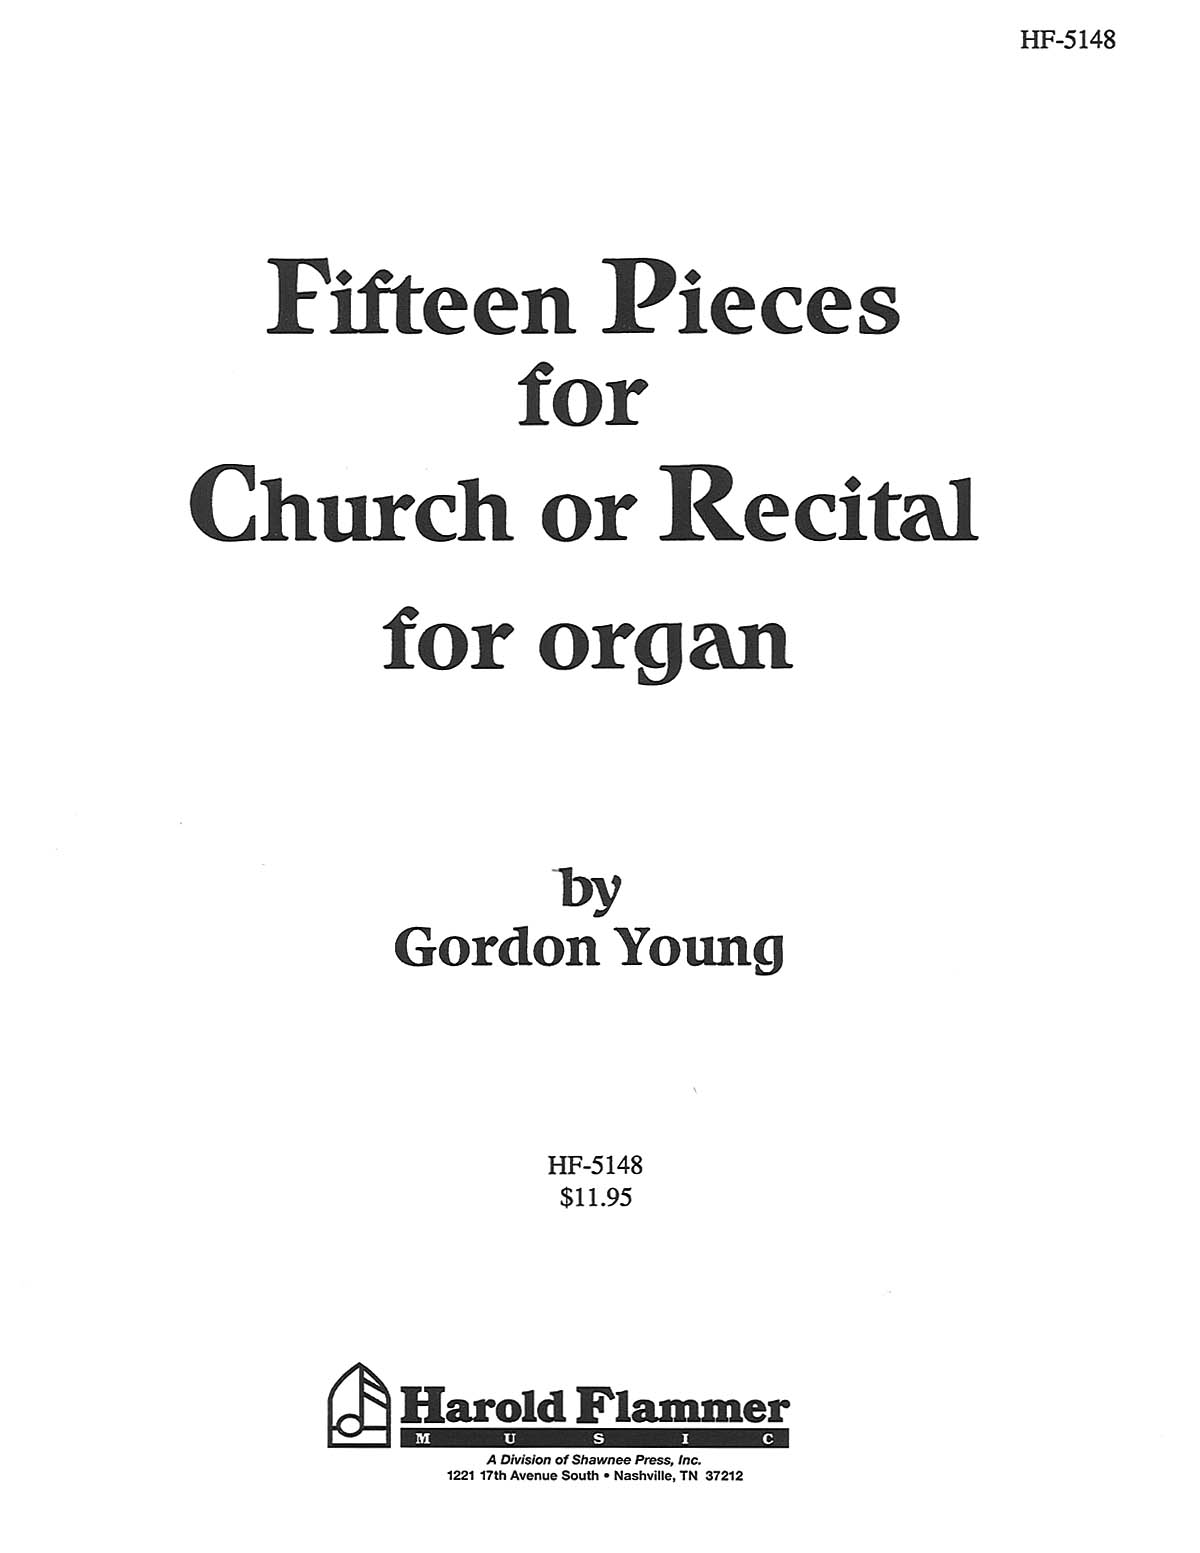 Gordon Young: Fifteen Pieces For Church Or Recital